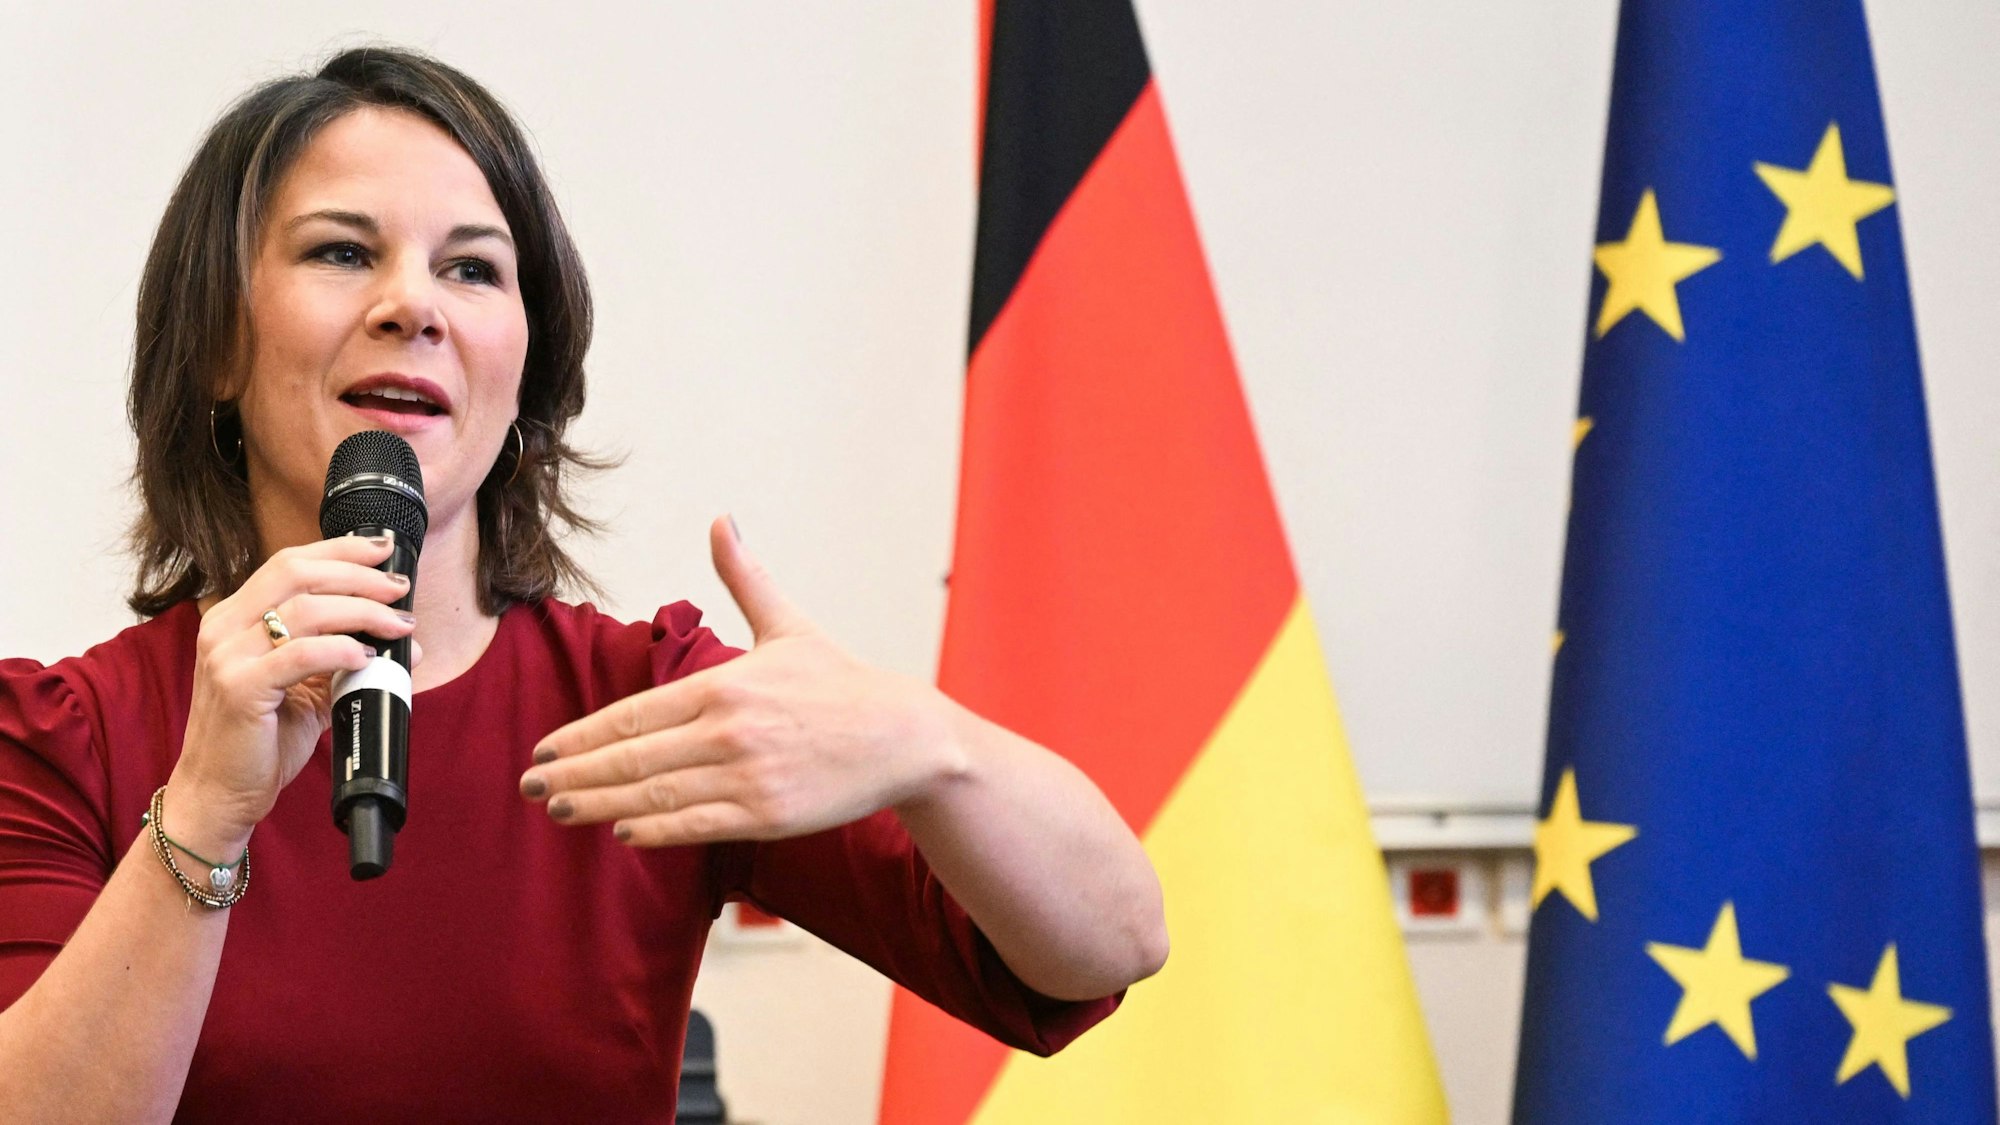 Annalena Baerbock spricht auf einer Konferenz. Im Hintergrund sind eine Europa- und eine Deutschlandflagge.